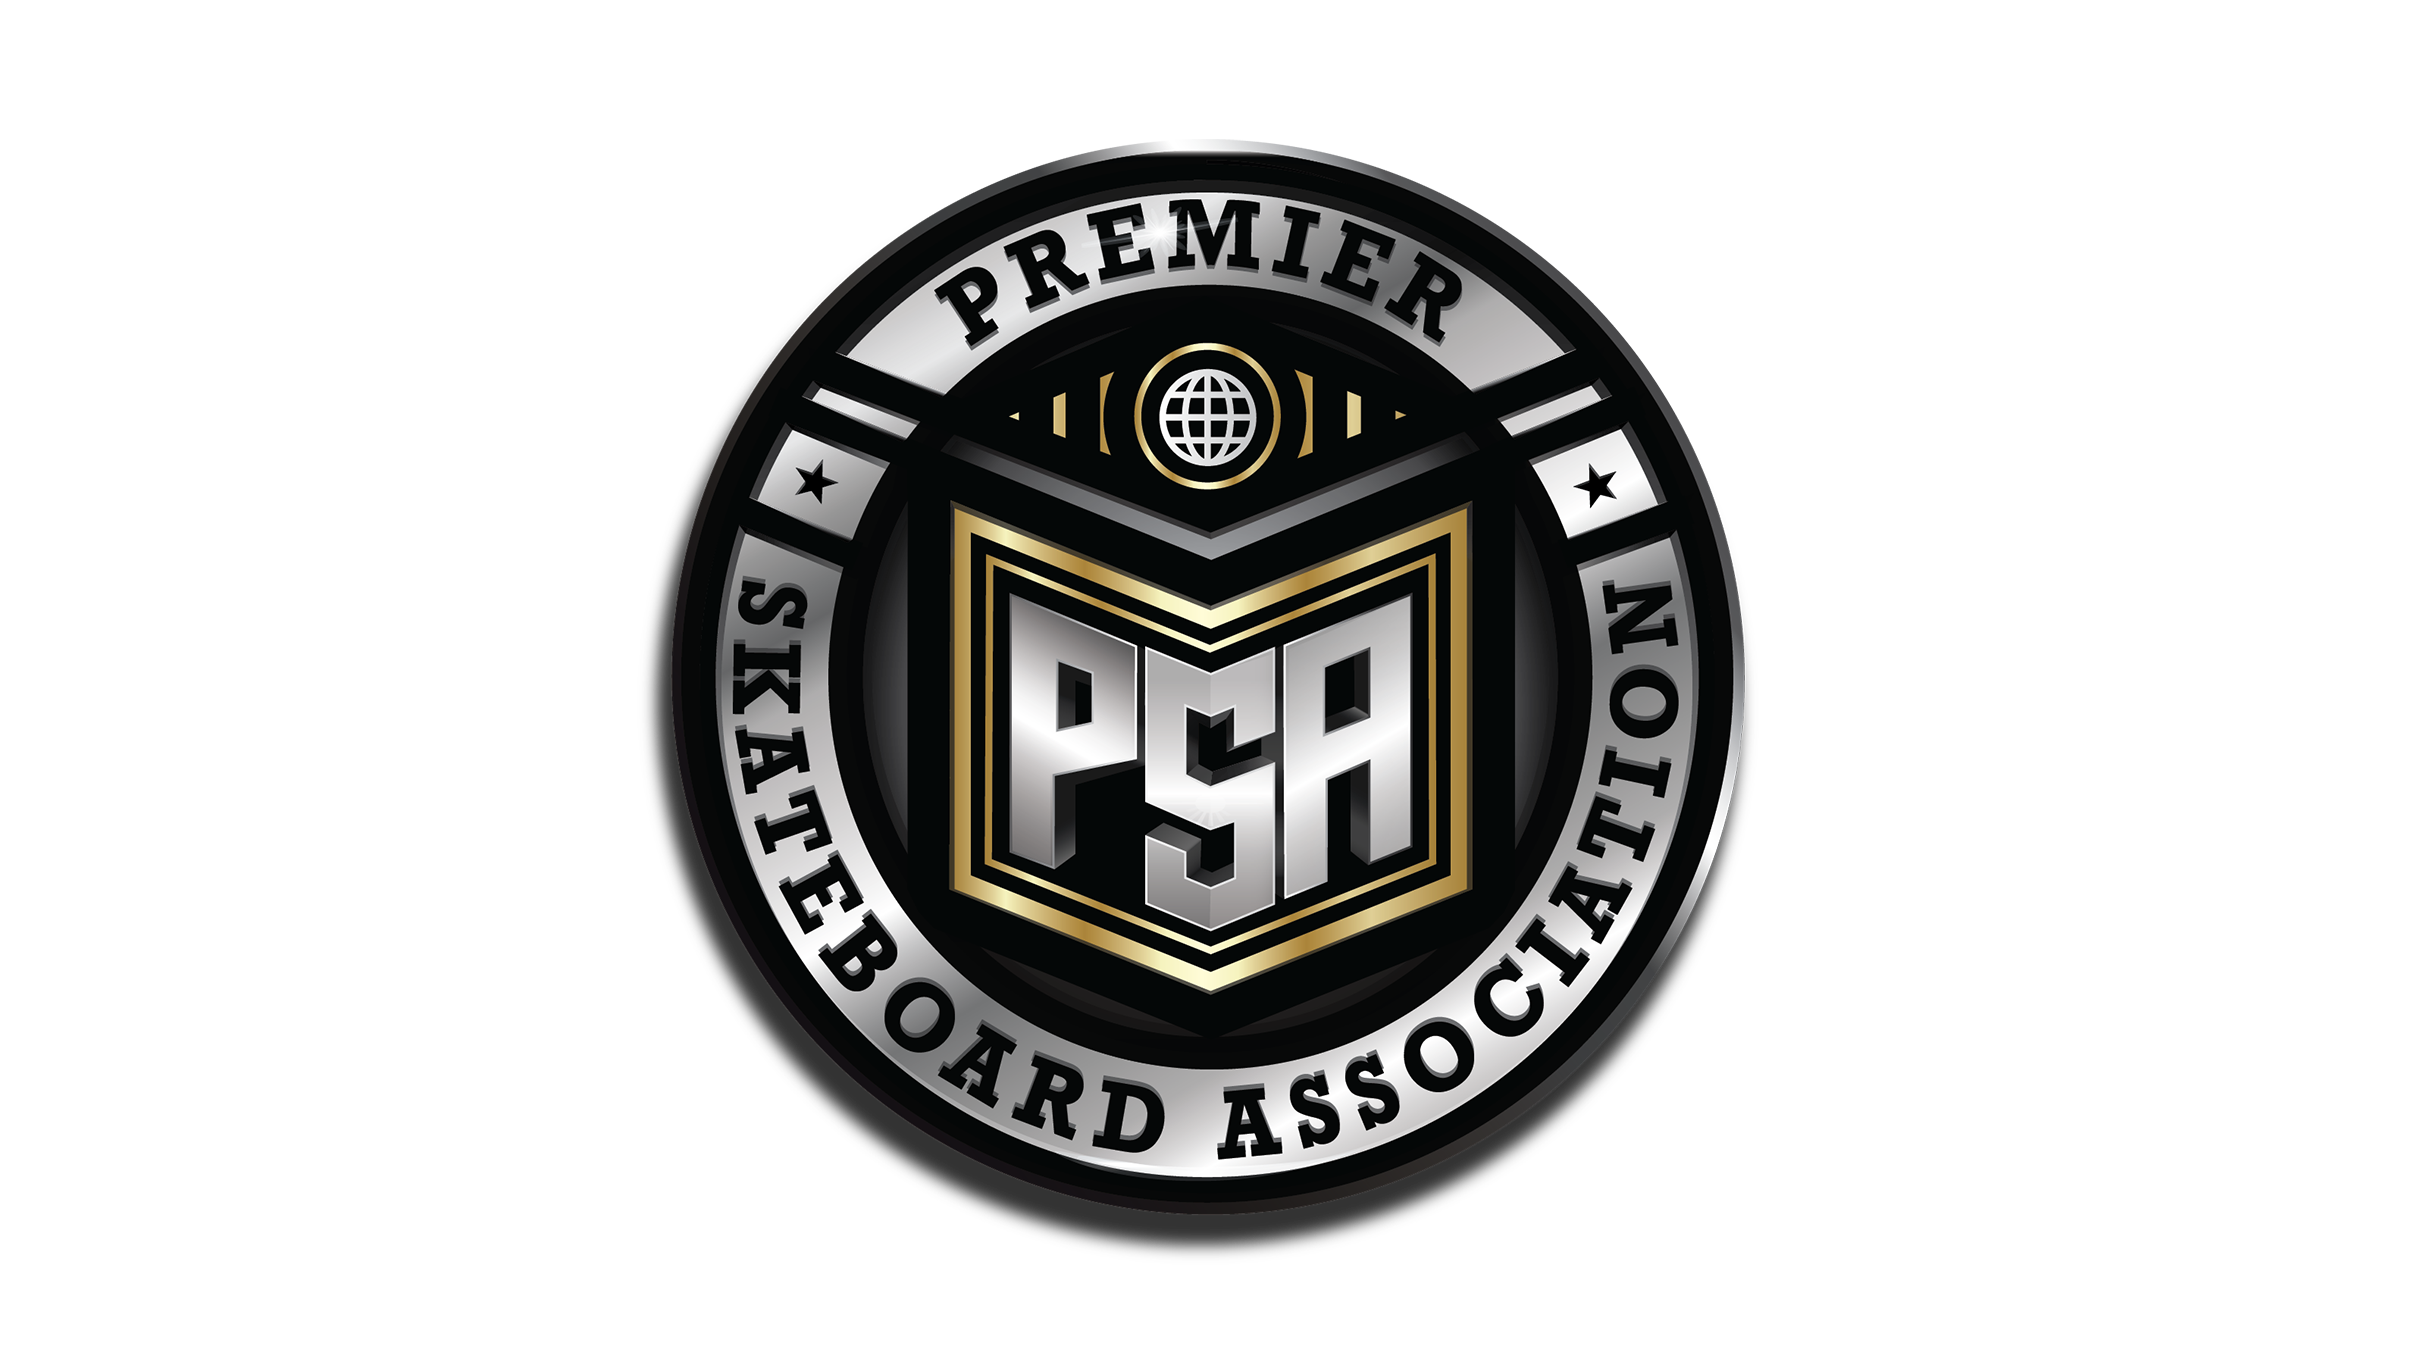 Premier Skateboard Association presale information on freepresalepasswords.com